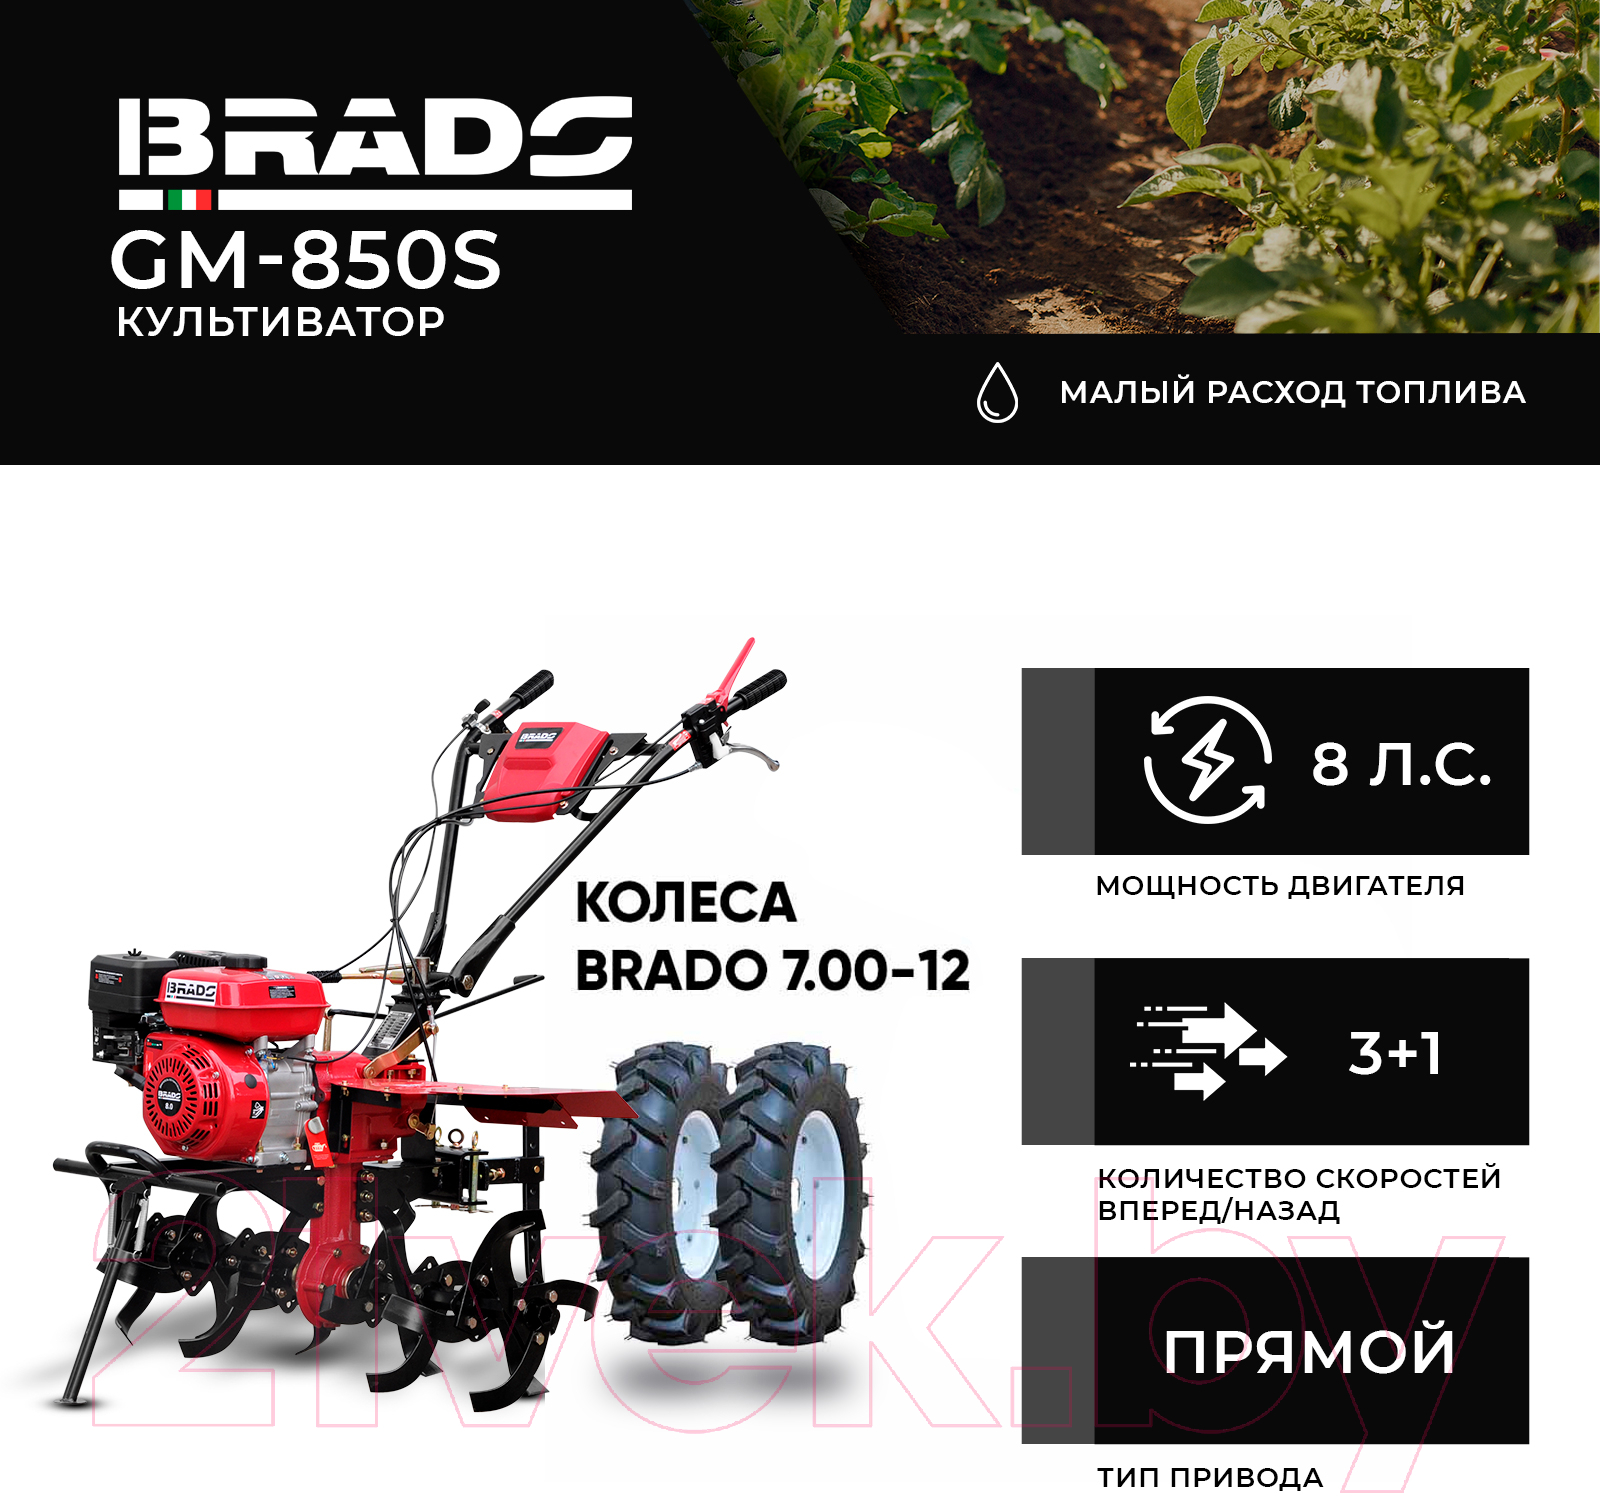 Мотокультиватор Brado GM-850S + колеса 7.00-12